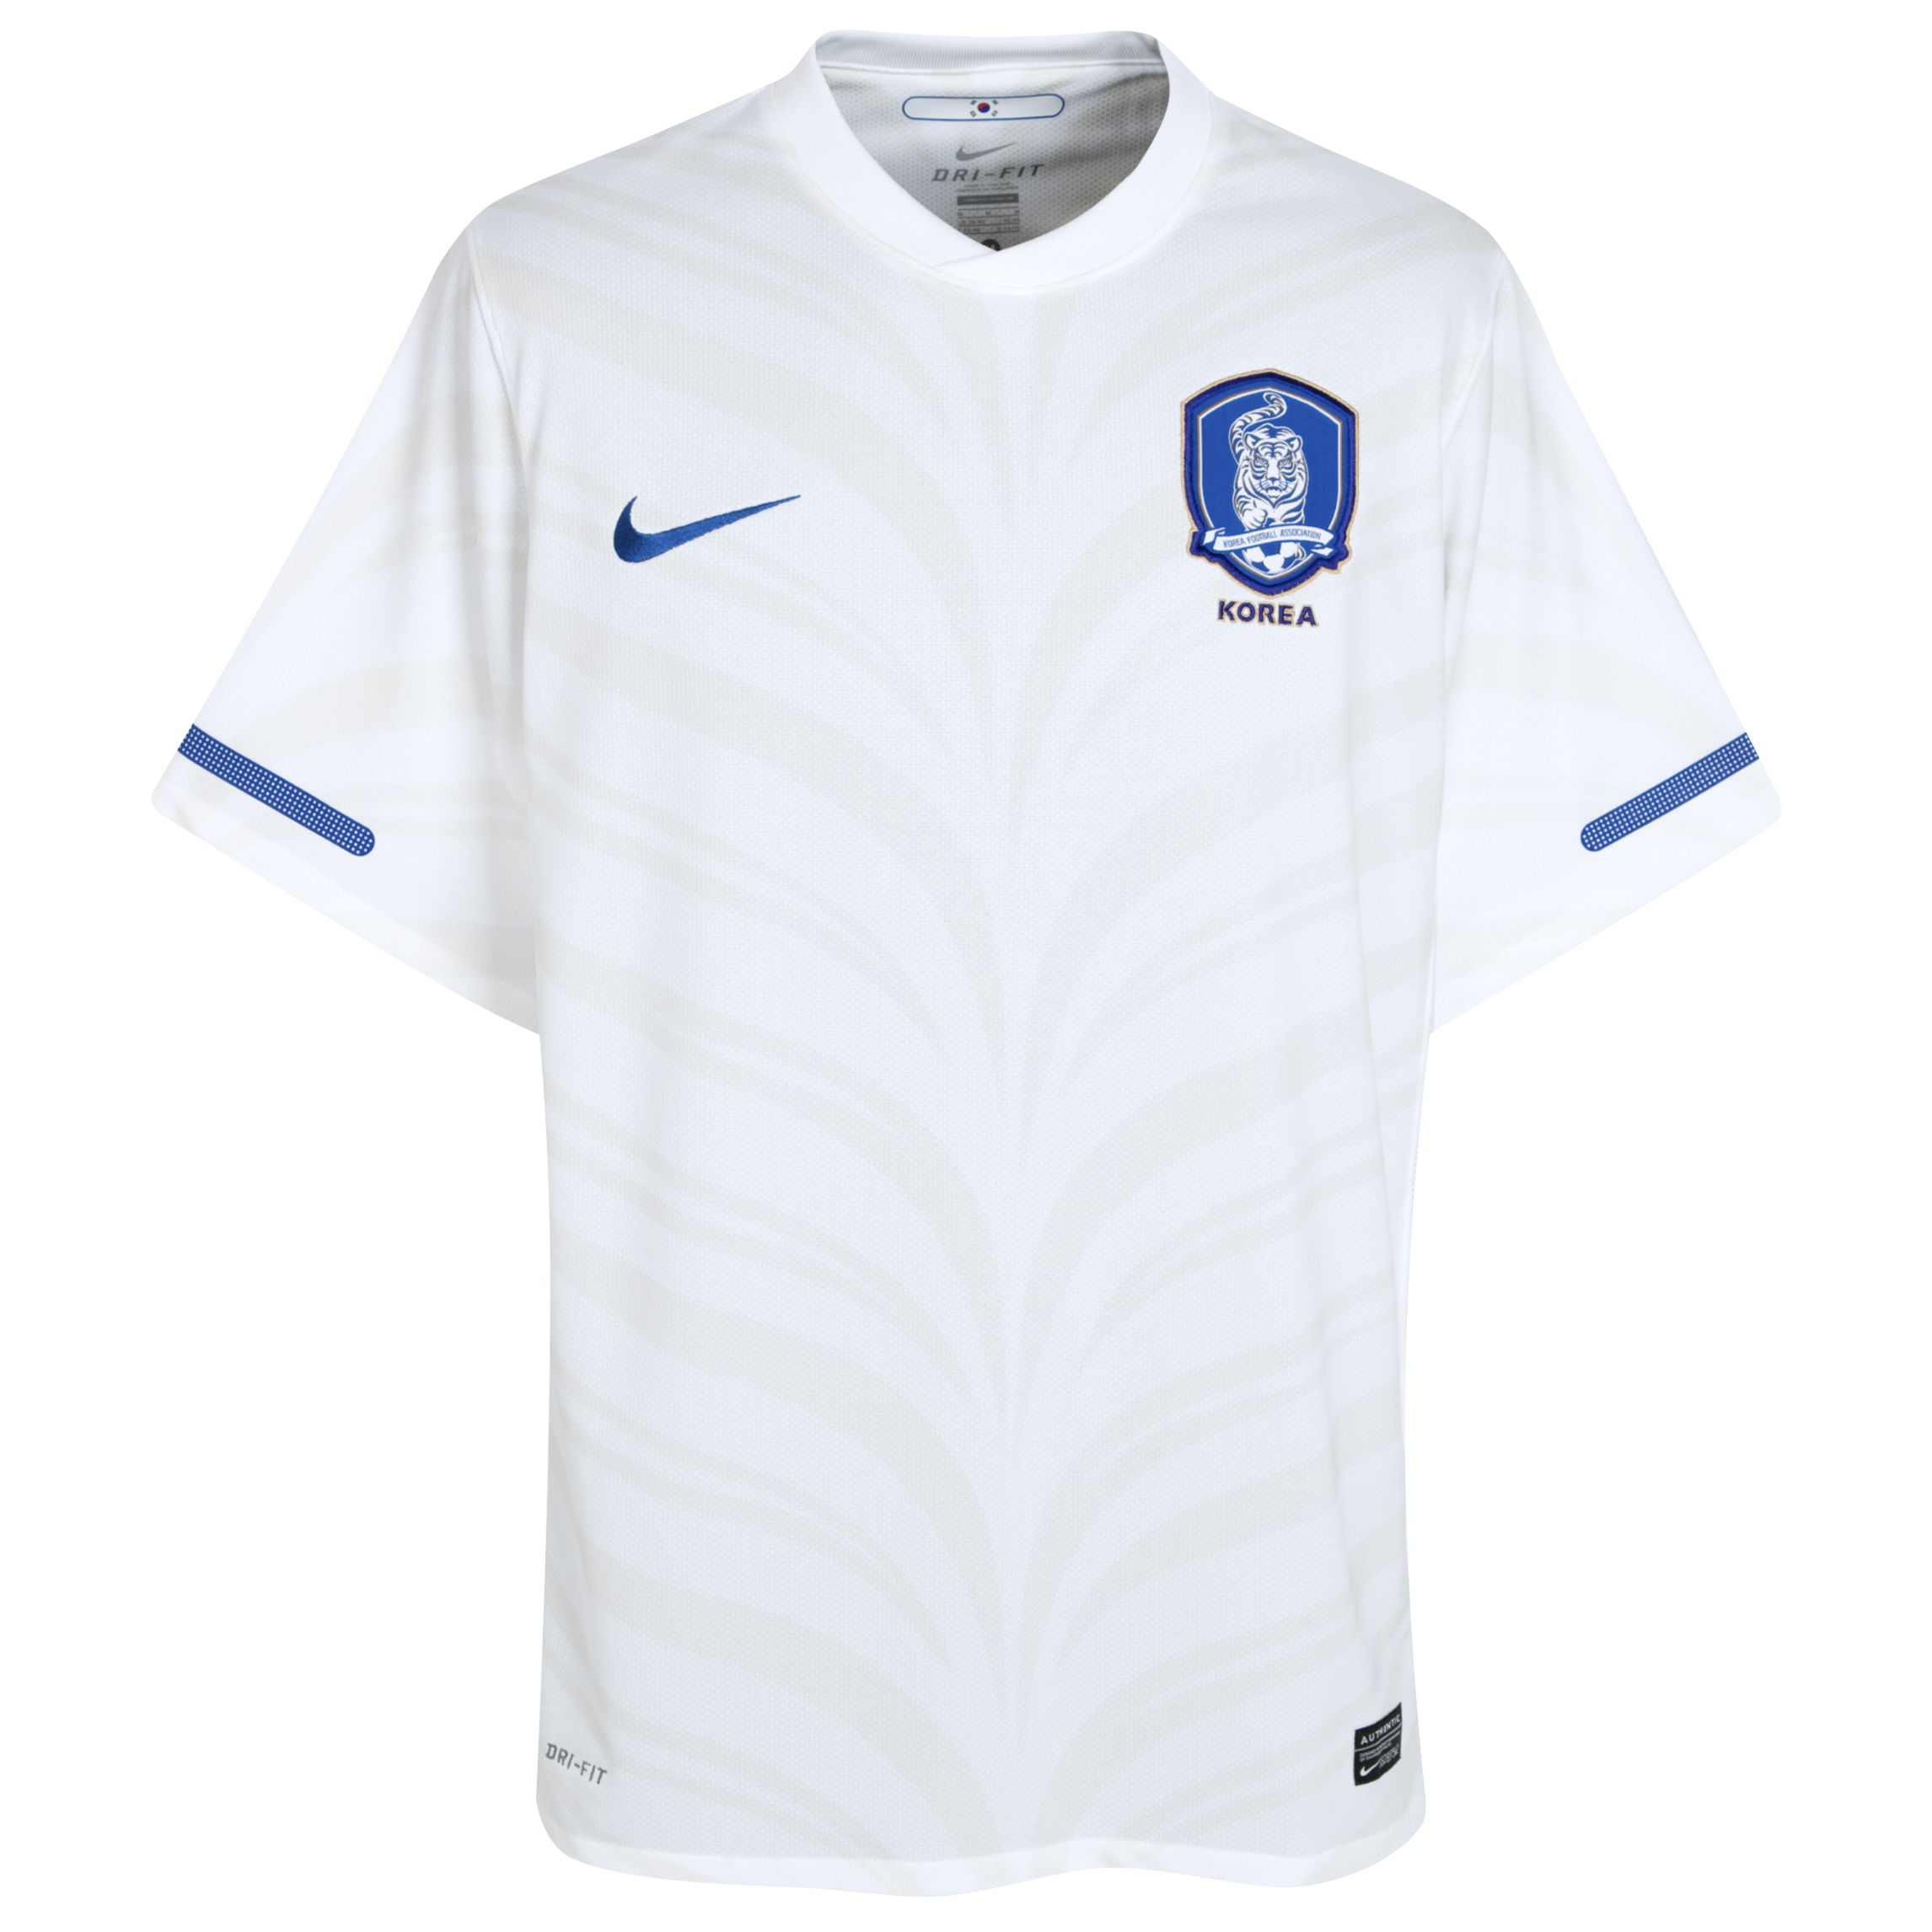 الملابس الخاصة بالمنتخبات في كأس العالم (جنوب أفريقيا 2010) Kb-69619